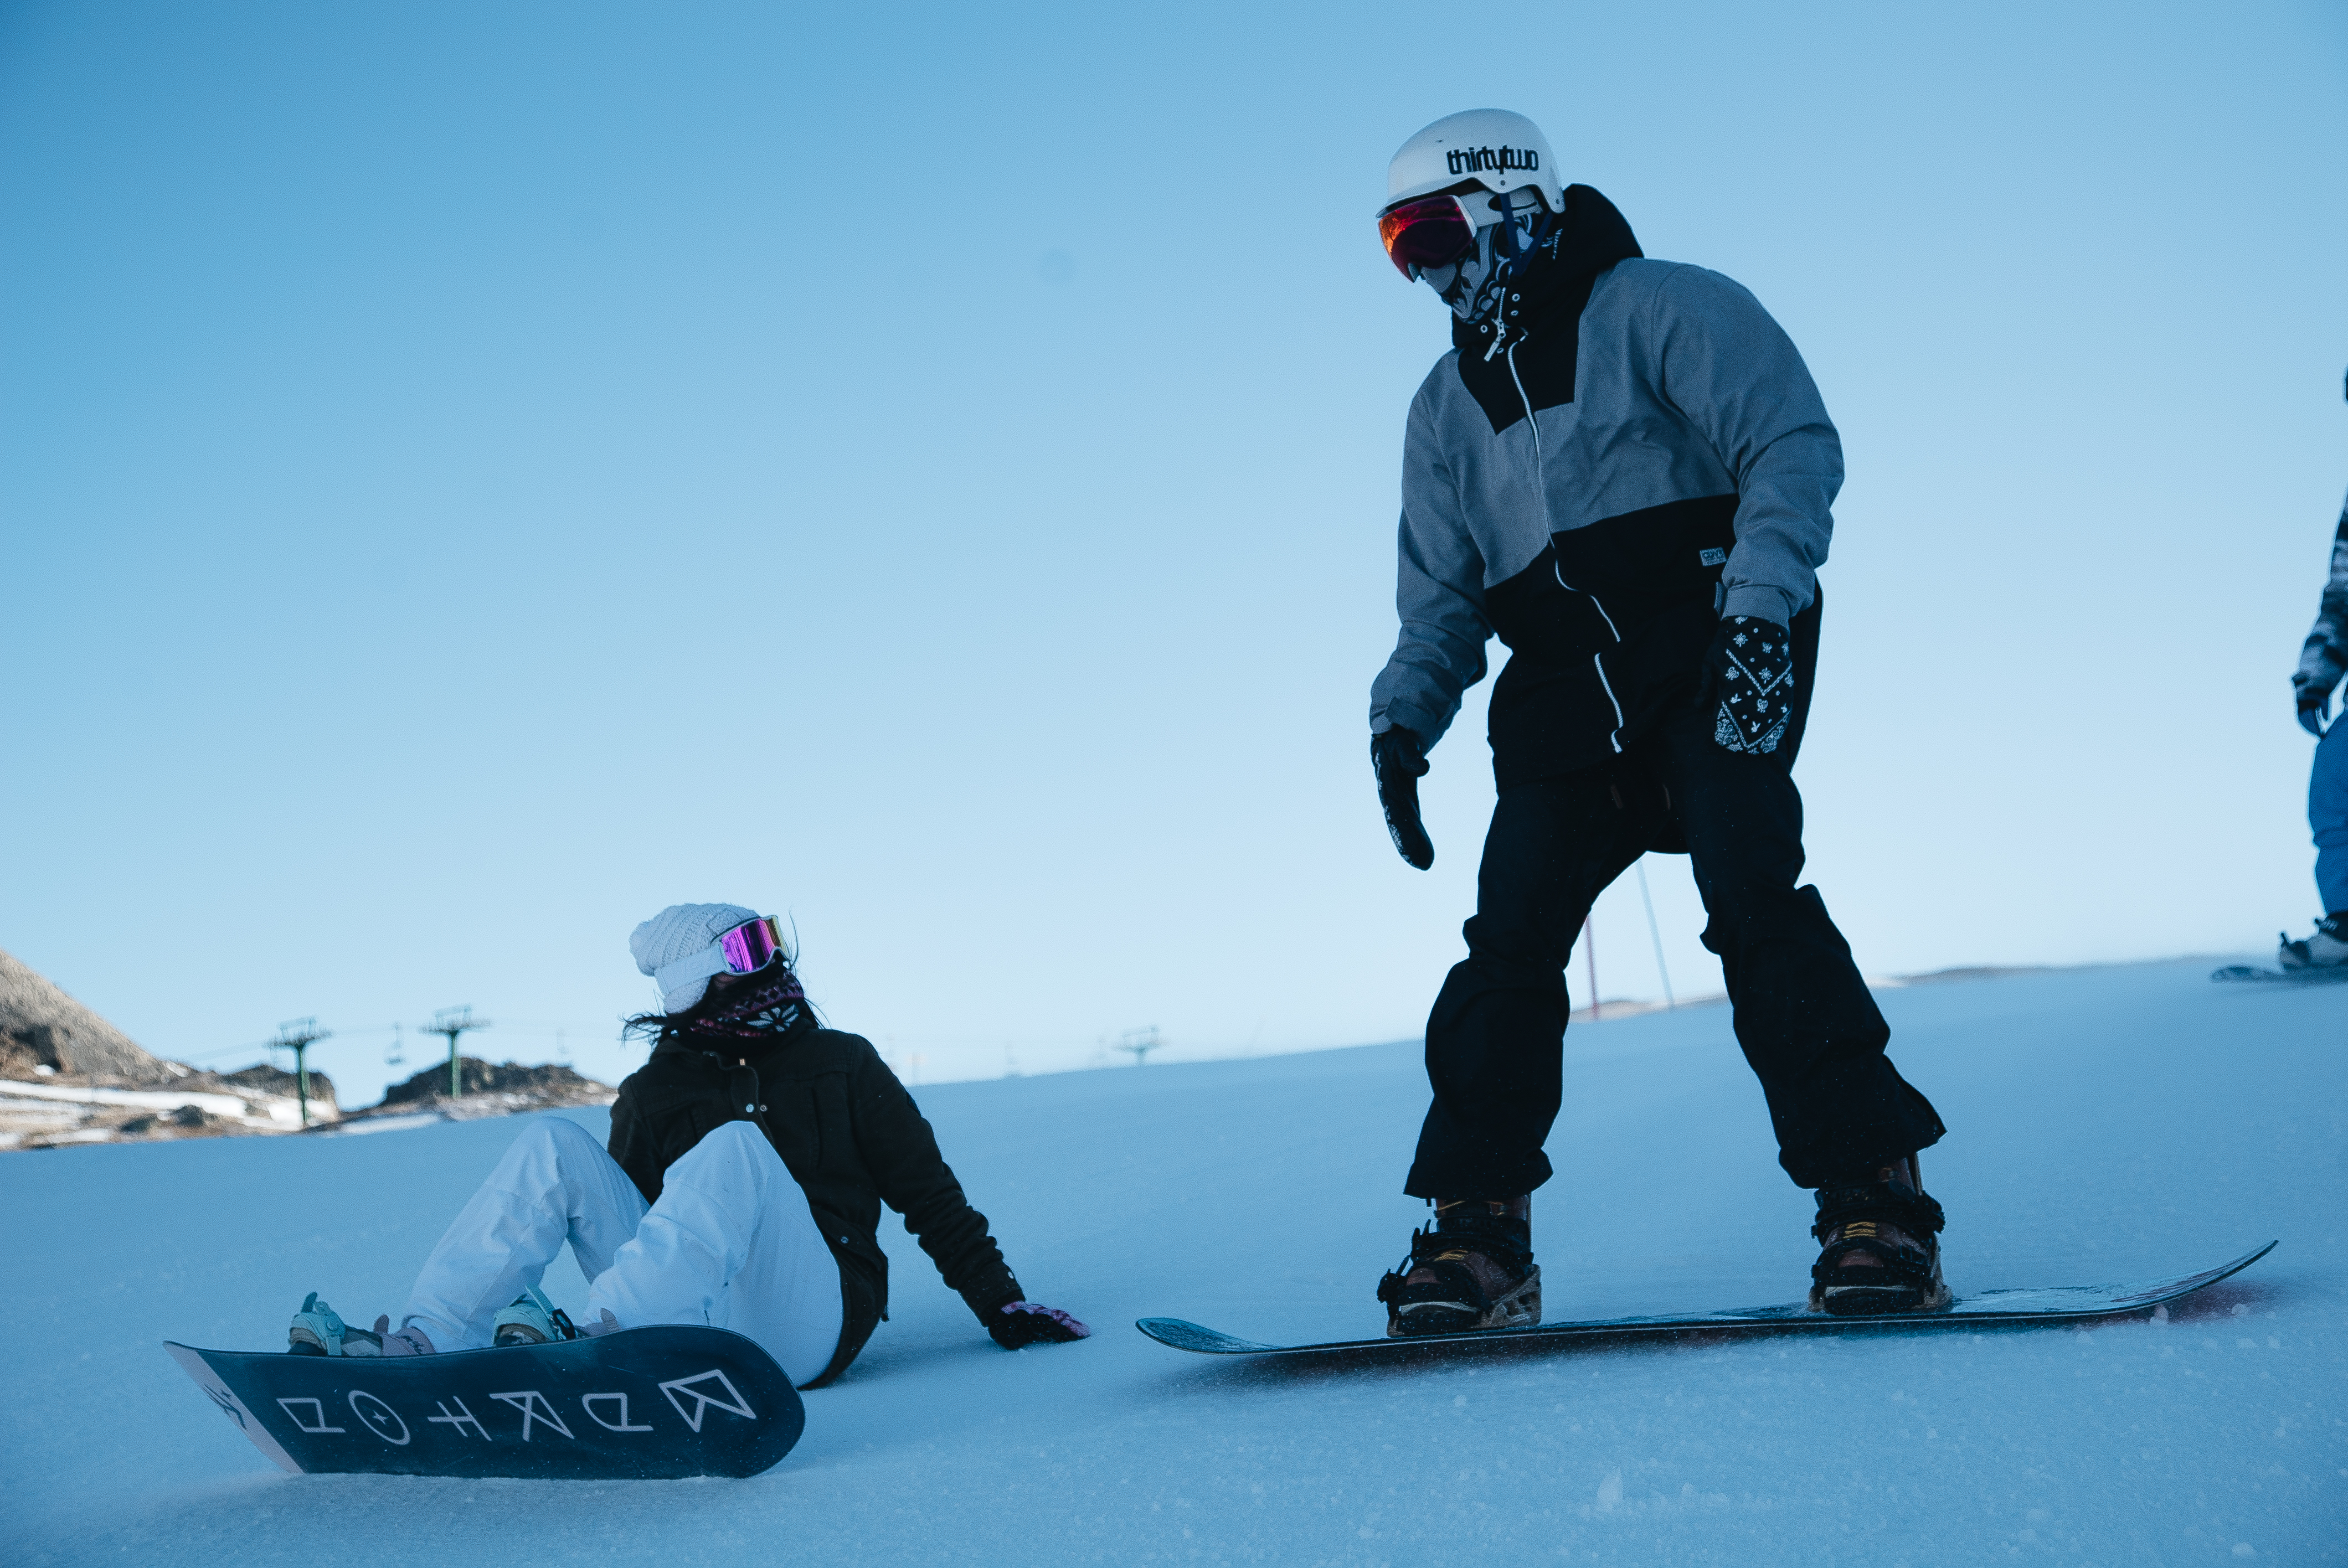 Tutorial básico: Cómo encerar tus esquís o tabla de snowboard 